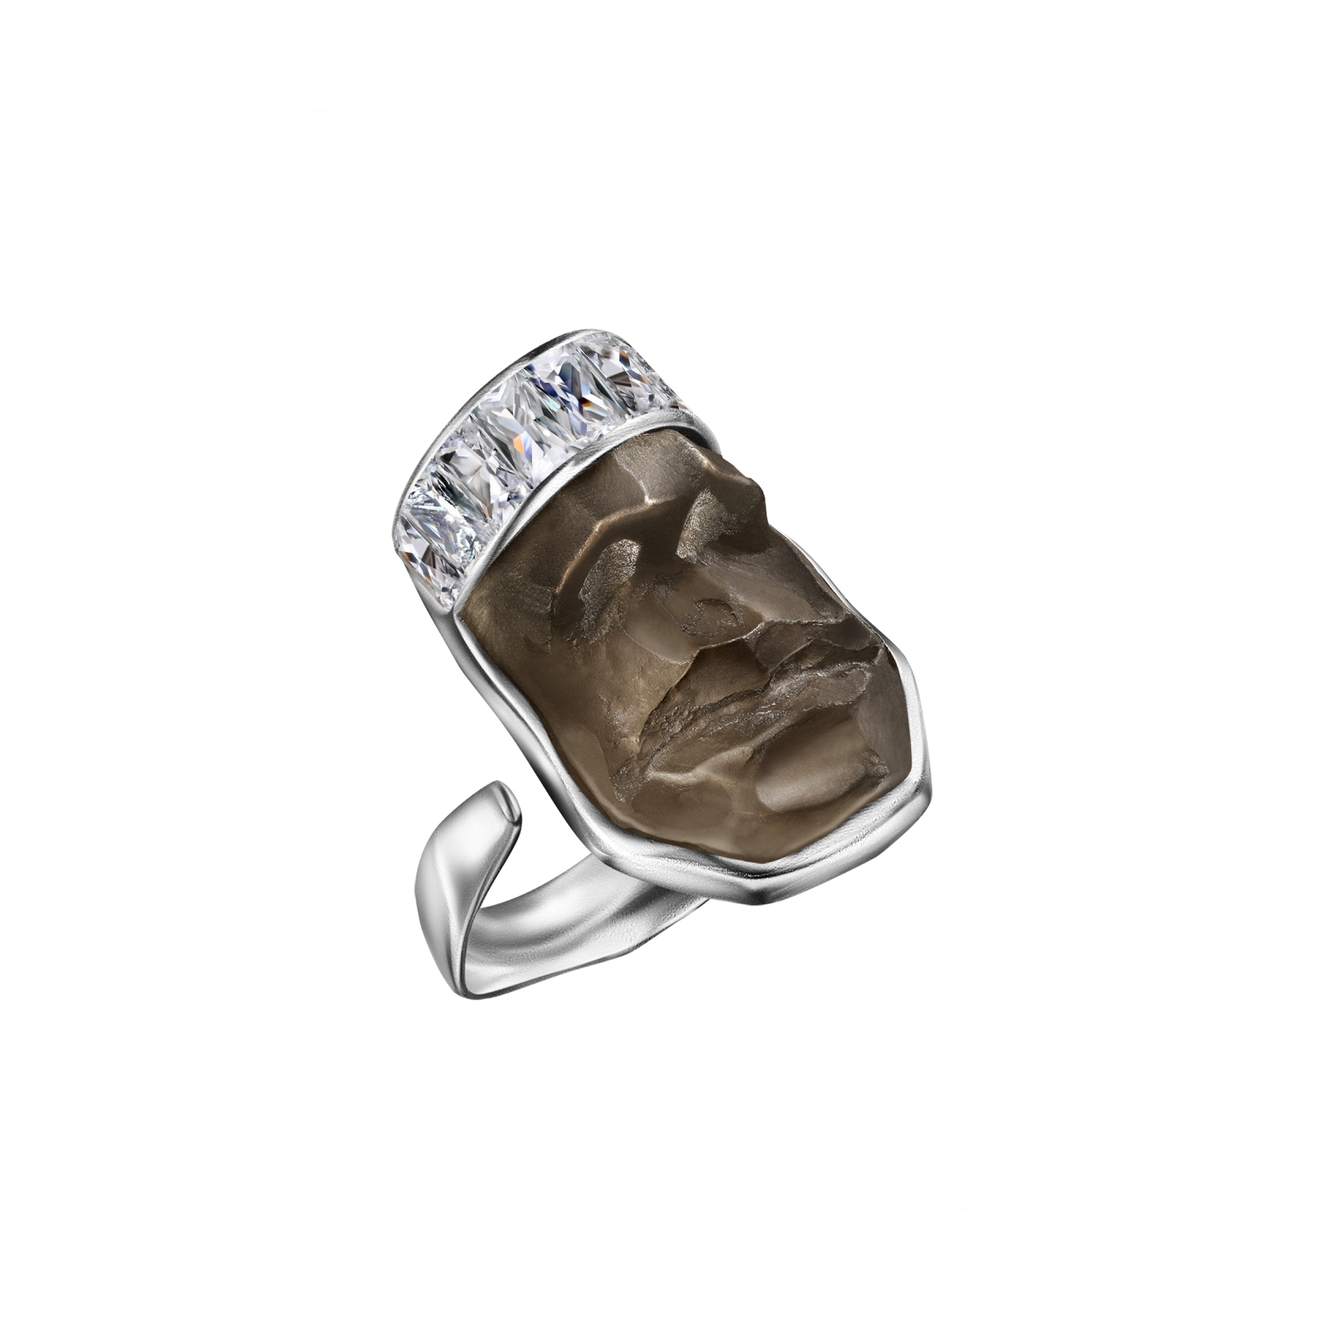 Maximilian Silver Label Кольцо Тишина из коллекции Сновидения maximilian silver label кольцо сердце из серебра червовый валет позолоченное матовое